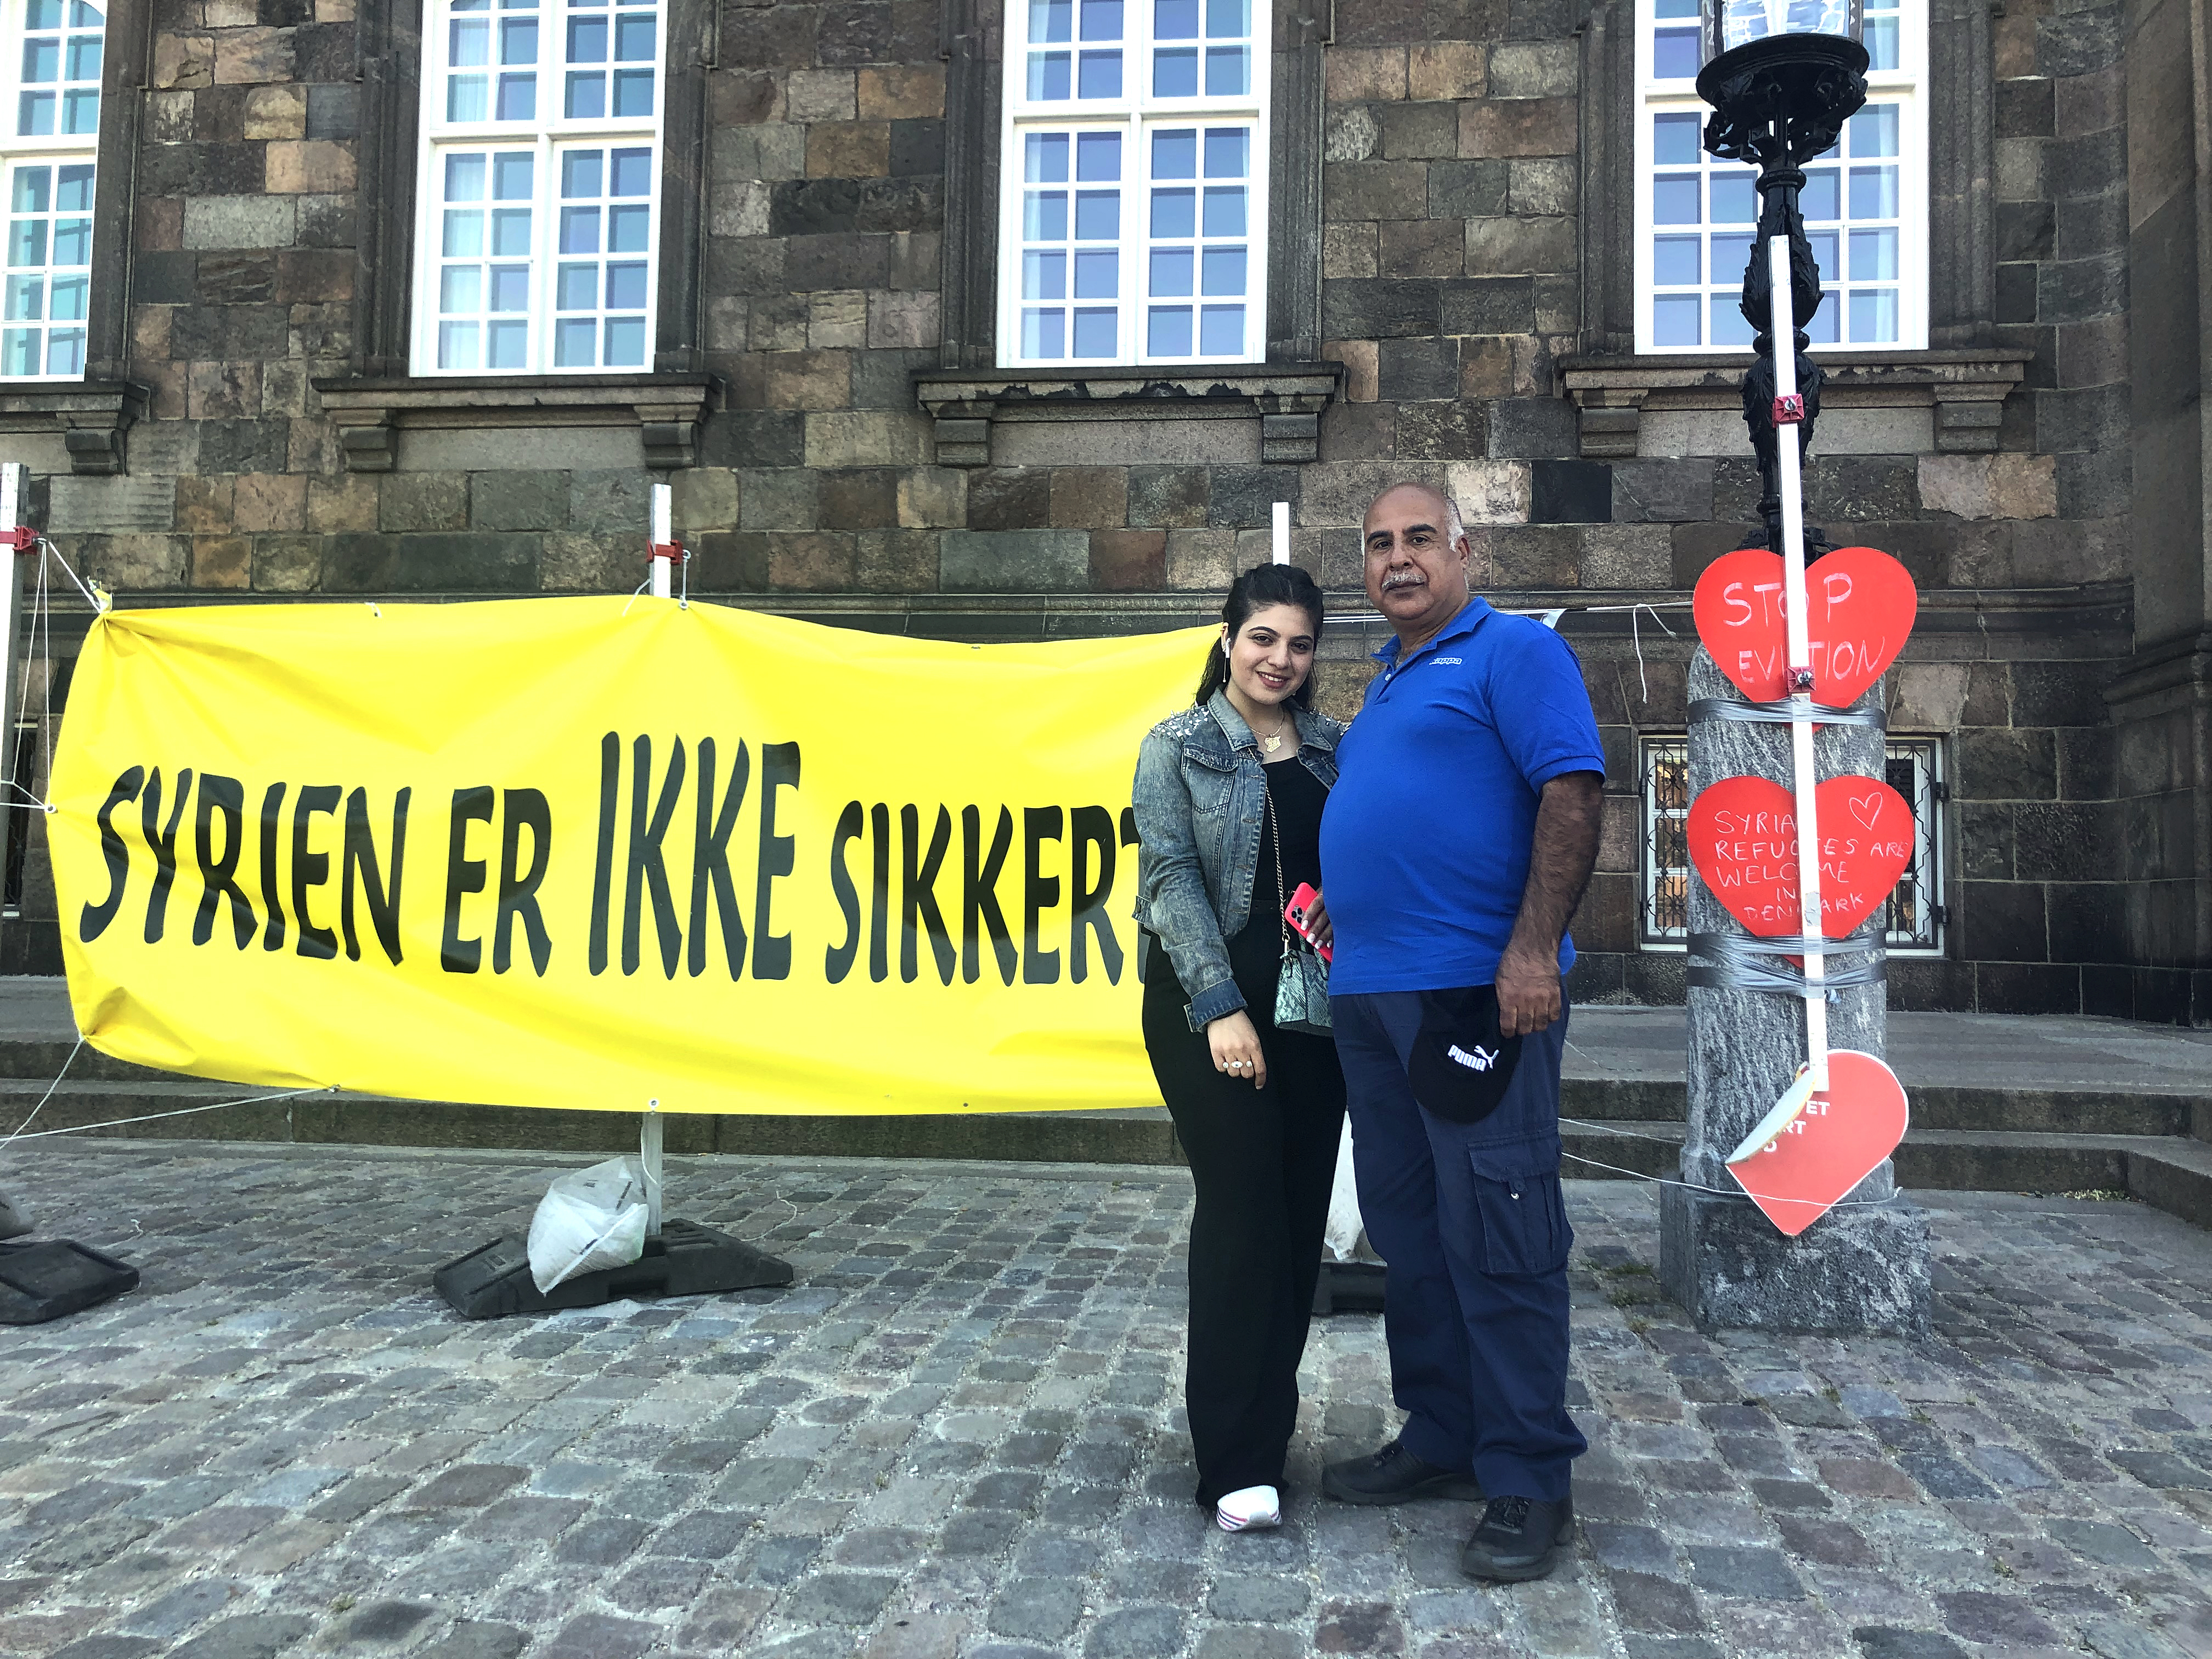 La socialdemocracia danesa reinventa el asilo: refugiados sí, pero a distancia